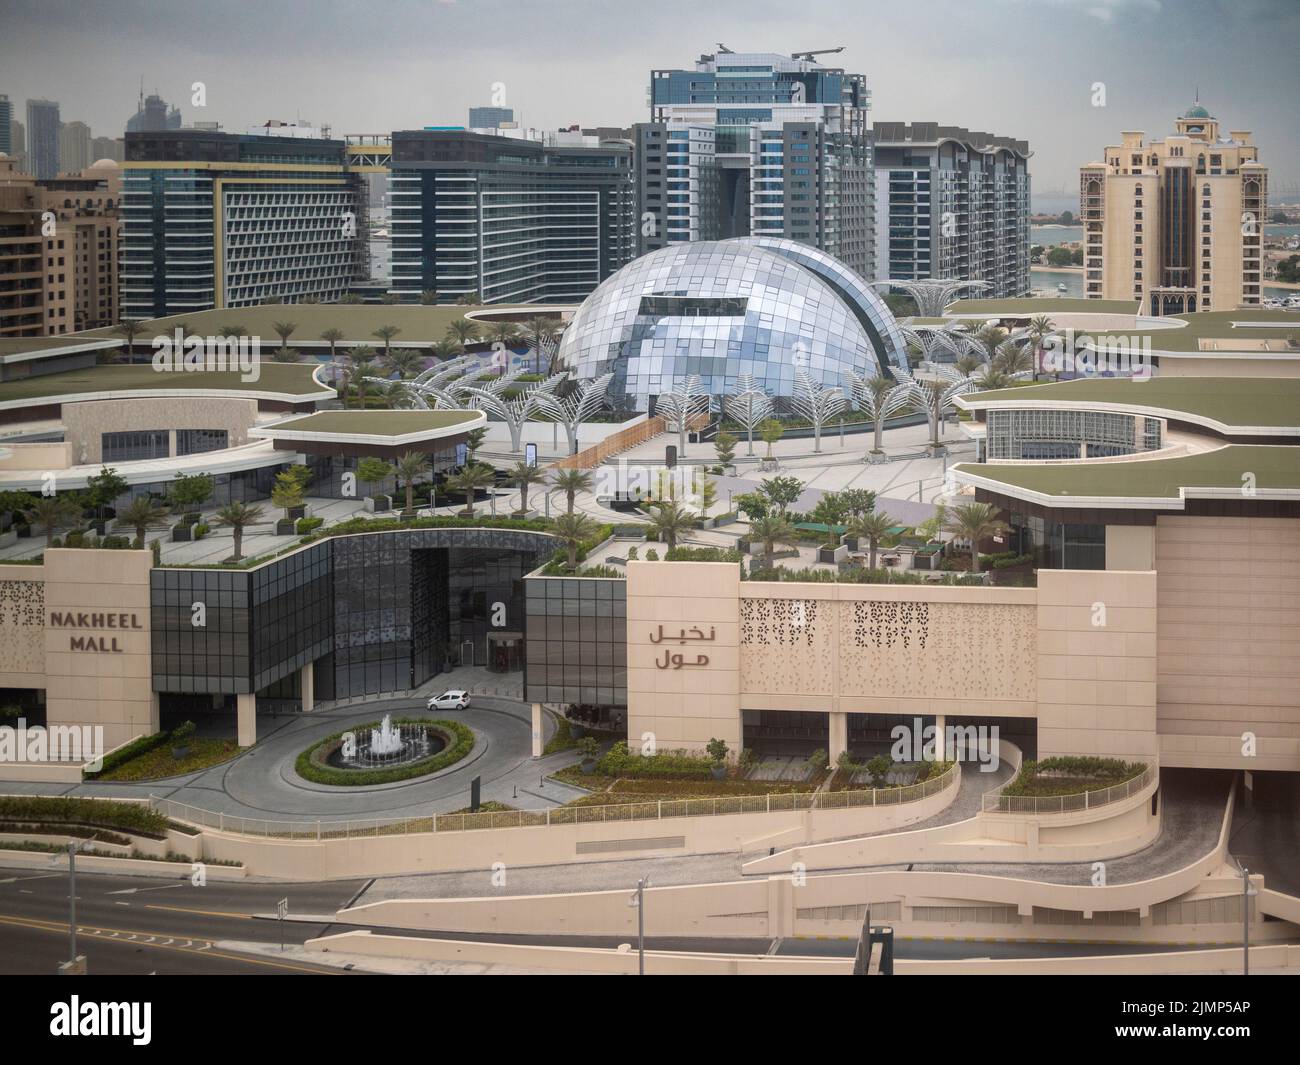 Nakheel Mall, shopping centre, Dubai UAE, United Arab Emirates, Stock Photo